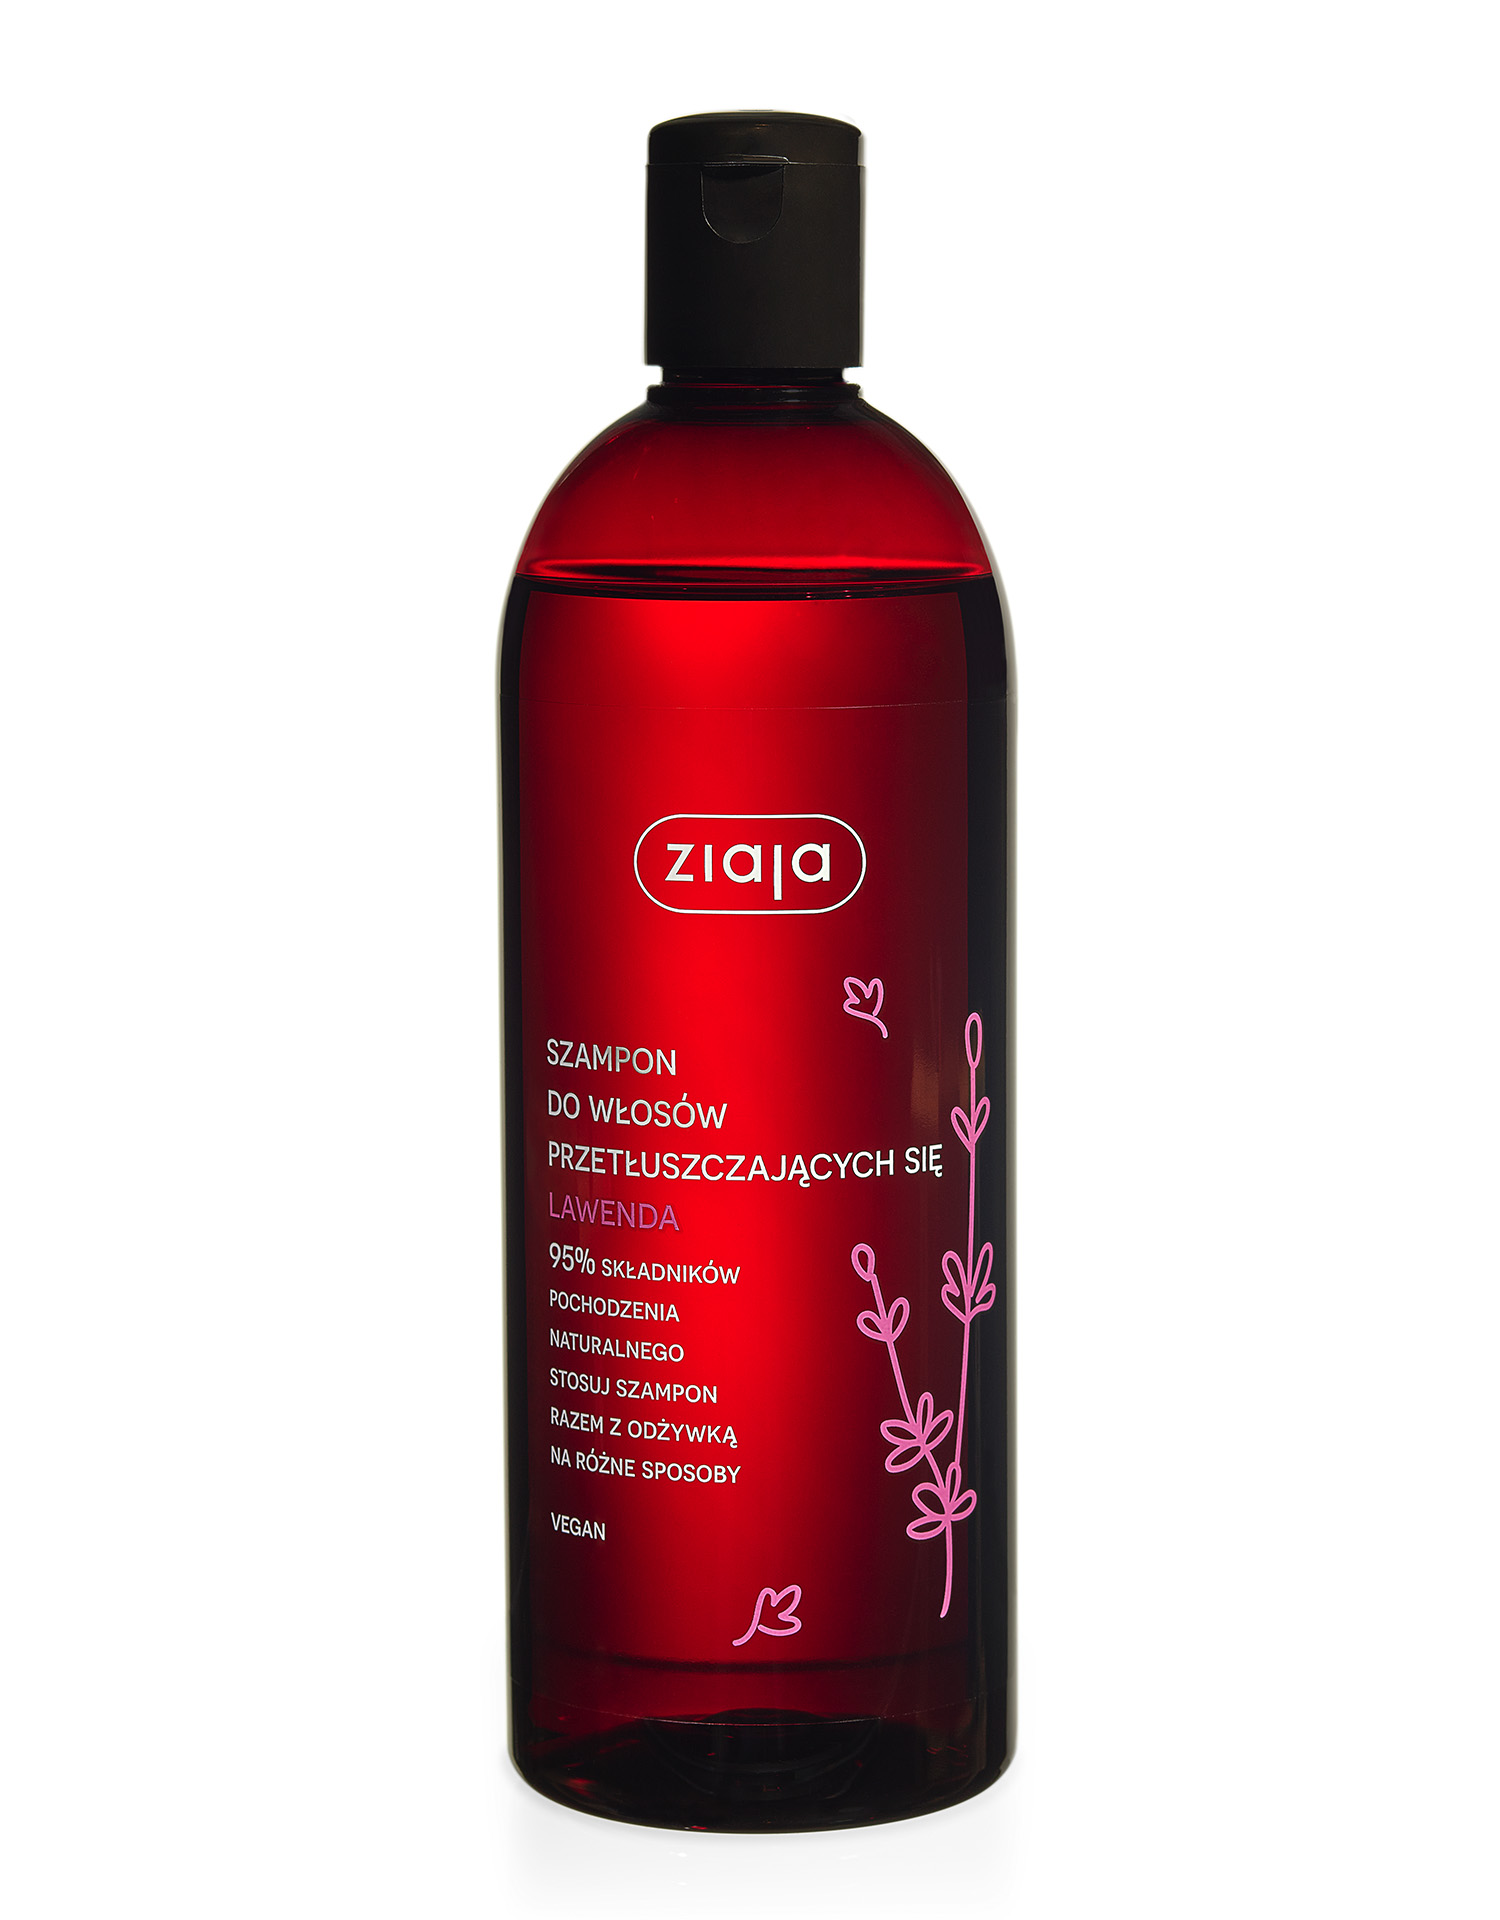 ziaja szampon do włosów przetłuszczających się lawendowy 500ml